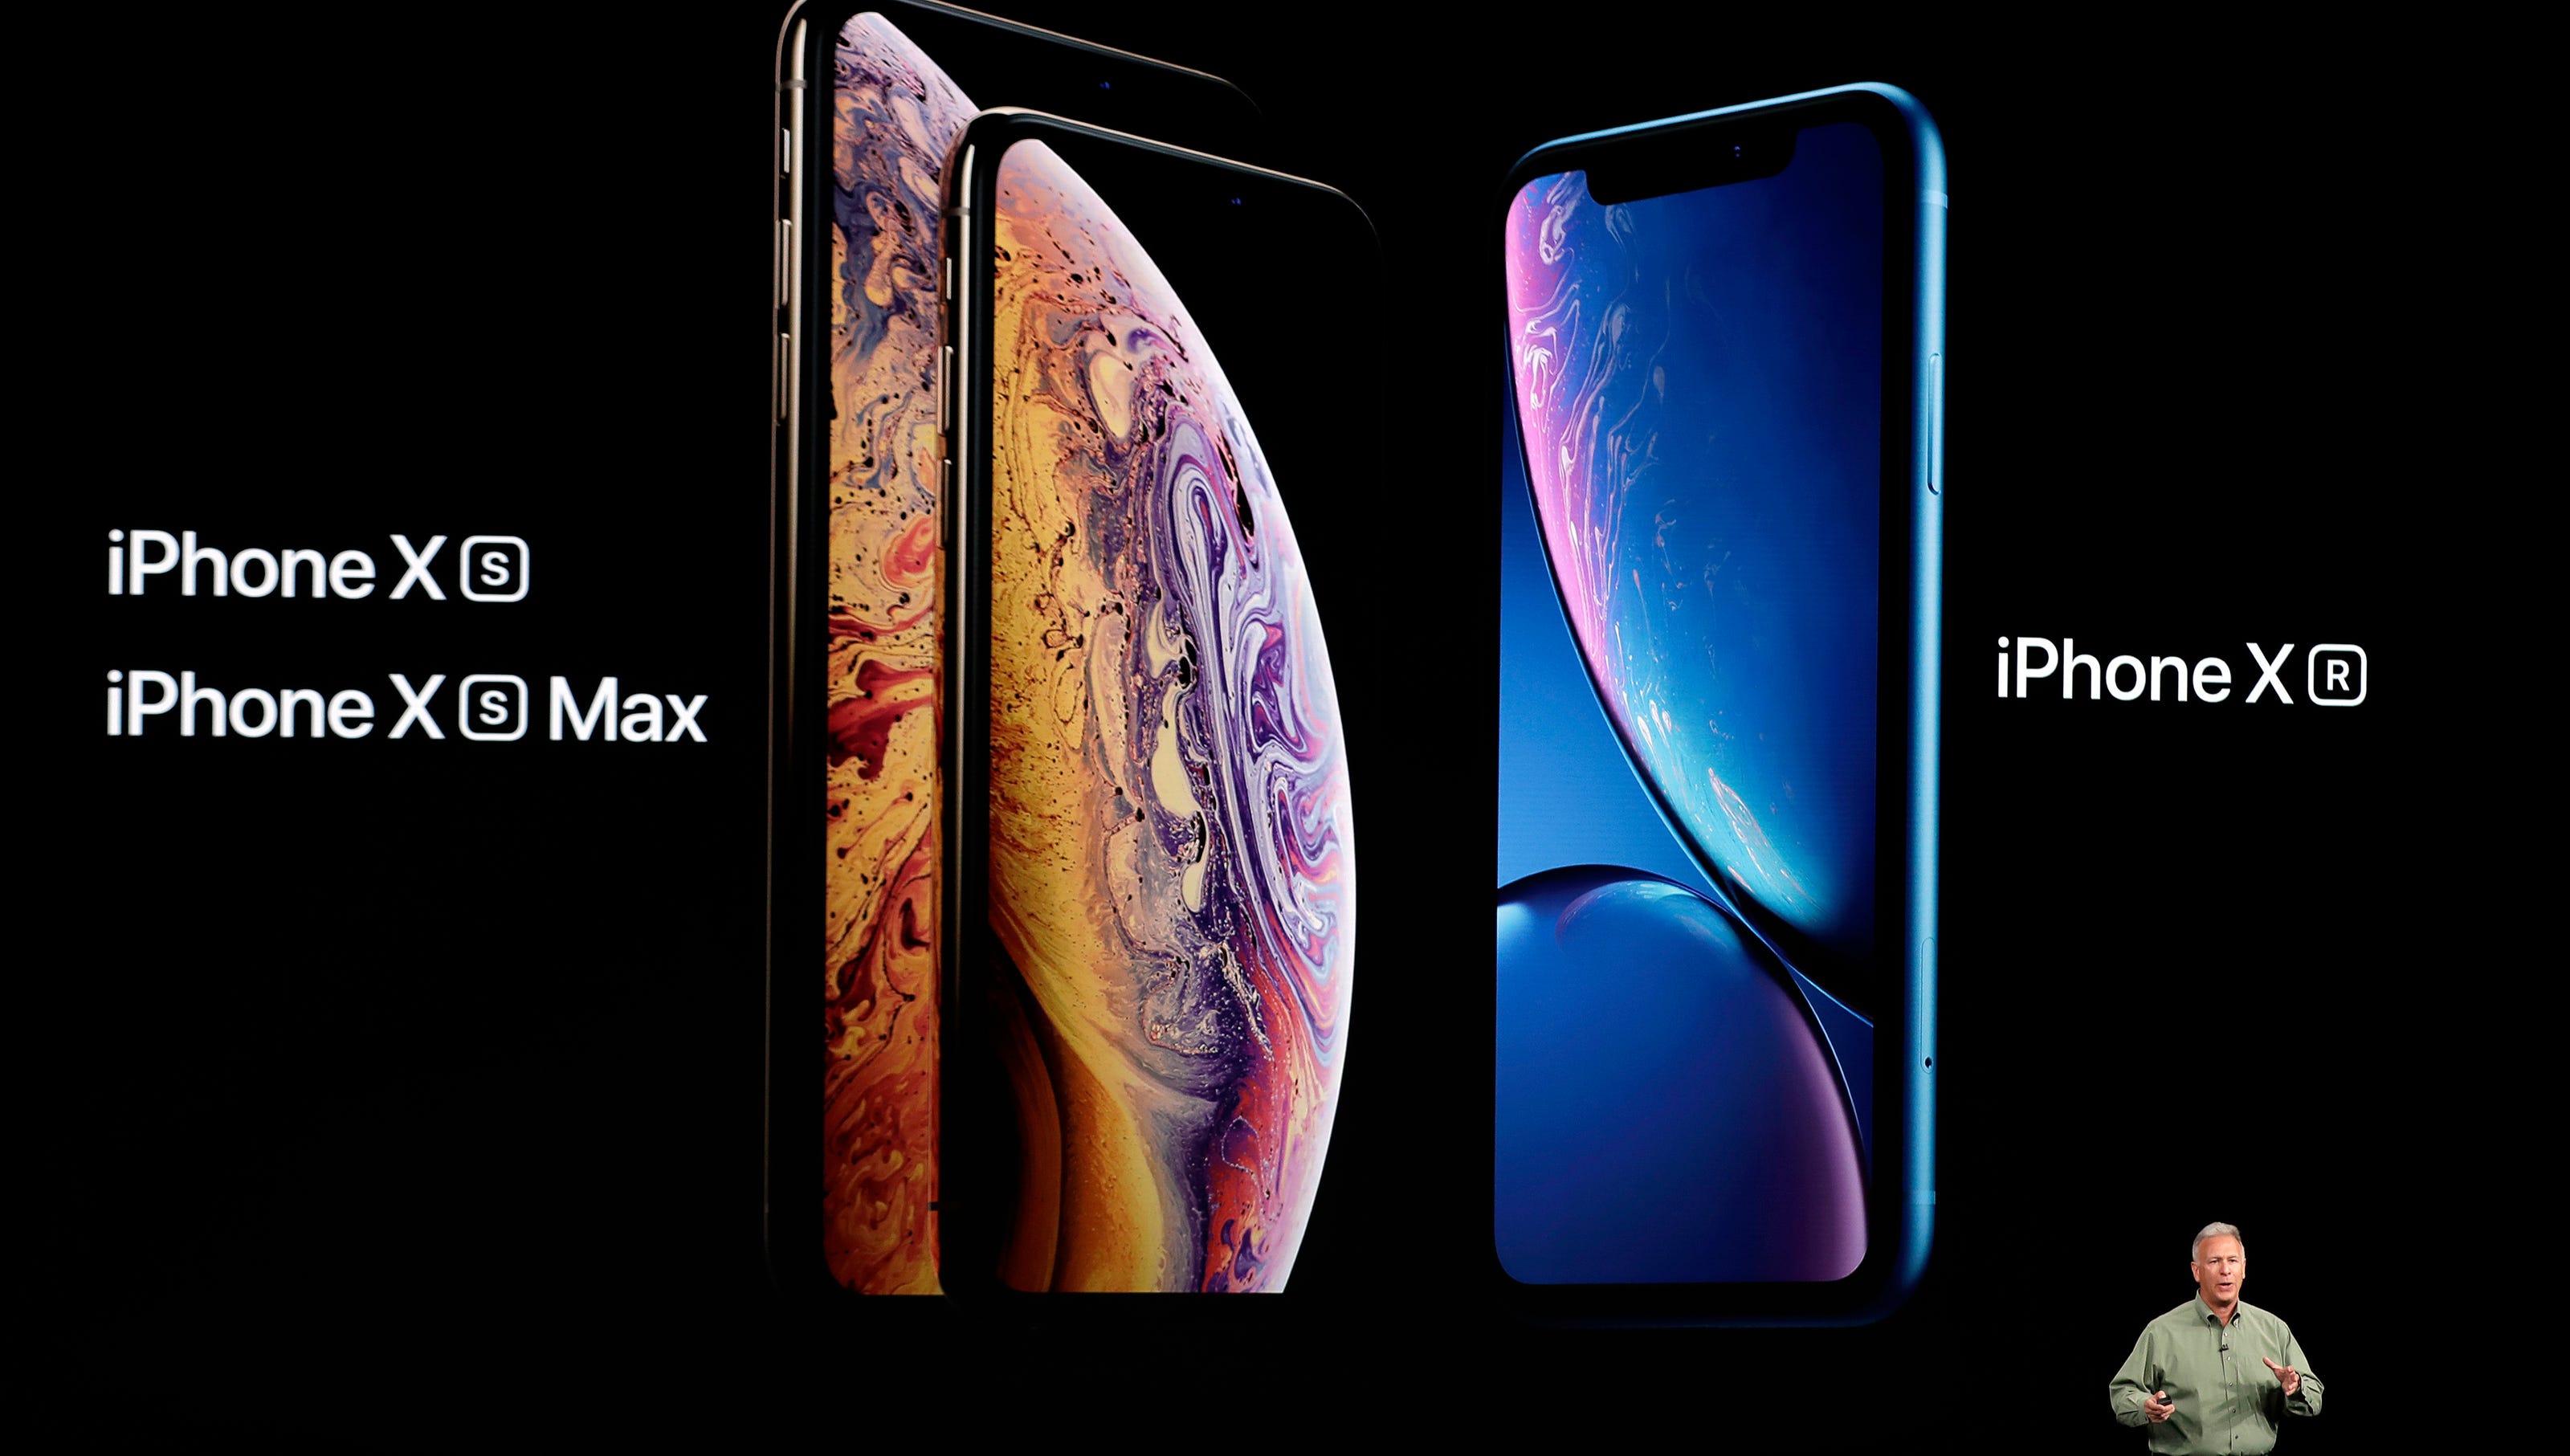 Фото постер айфон. Iphone XS vs iphone XR. Apple event iphone XS. Iphone XR 2018. Реклама айфона.